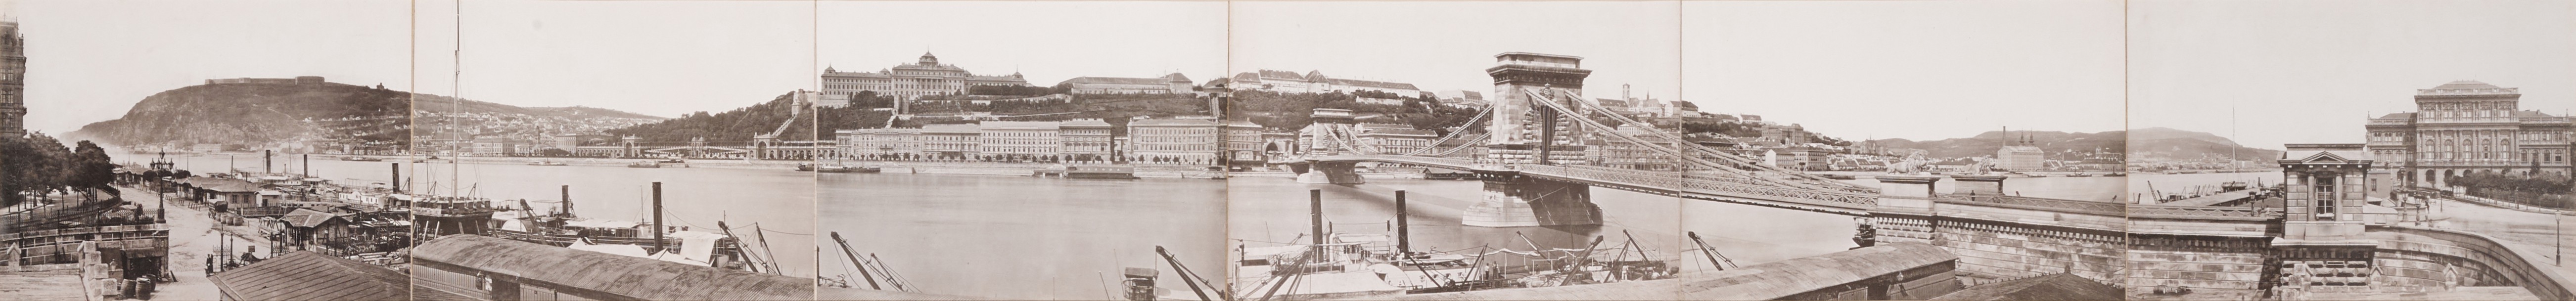 hungary_kozmata_ferencz_panorama_of_budapest_c_1880s.jpg